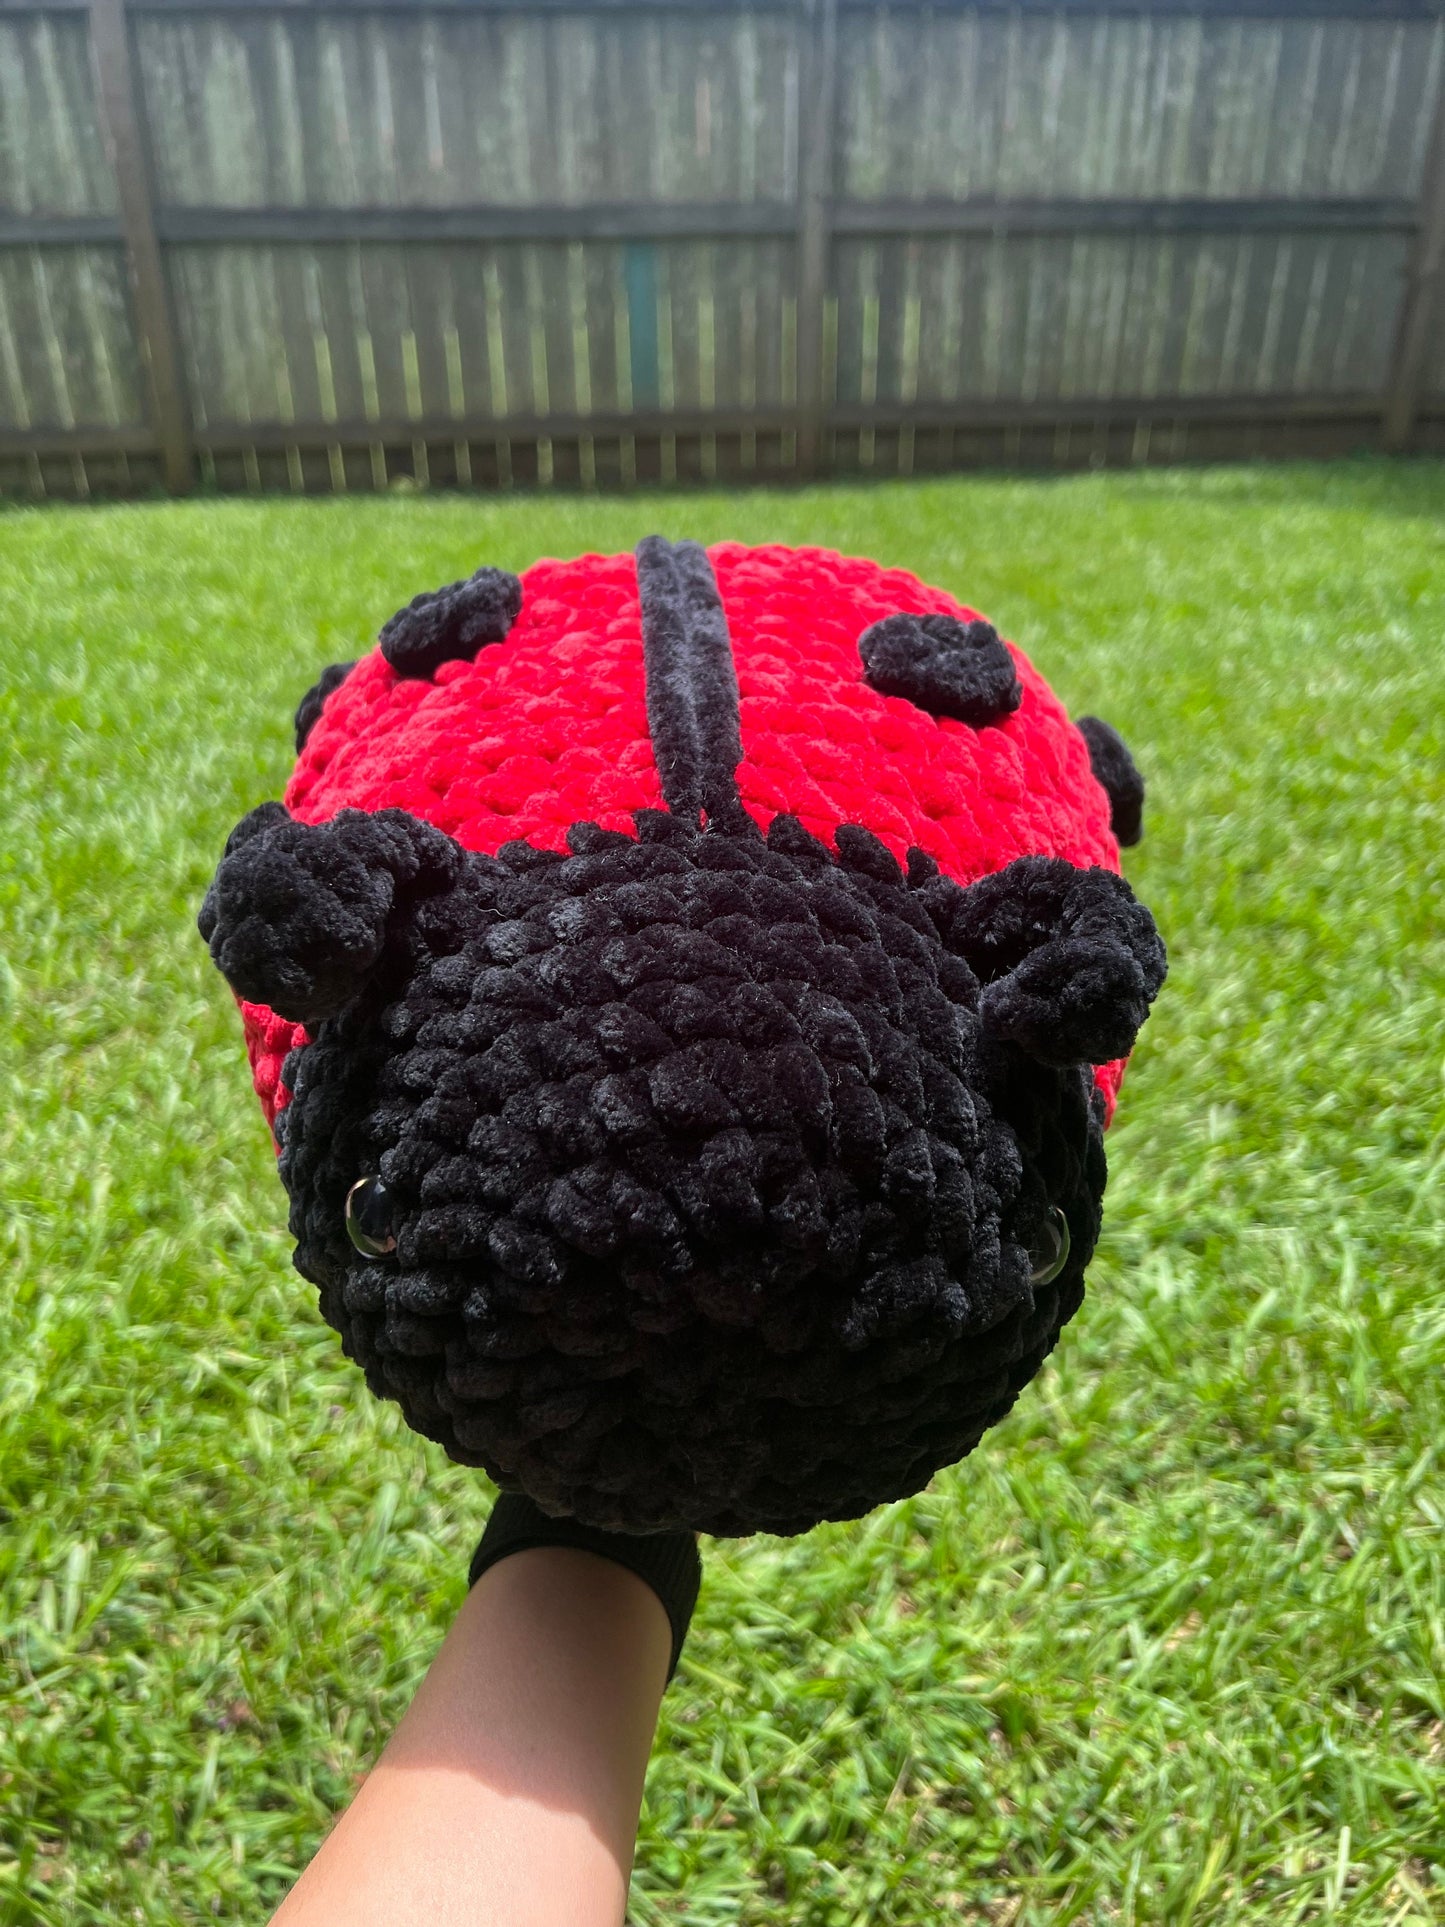 Jumbo Ladybug Crochet Pattern